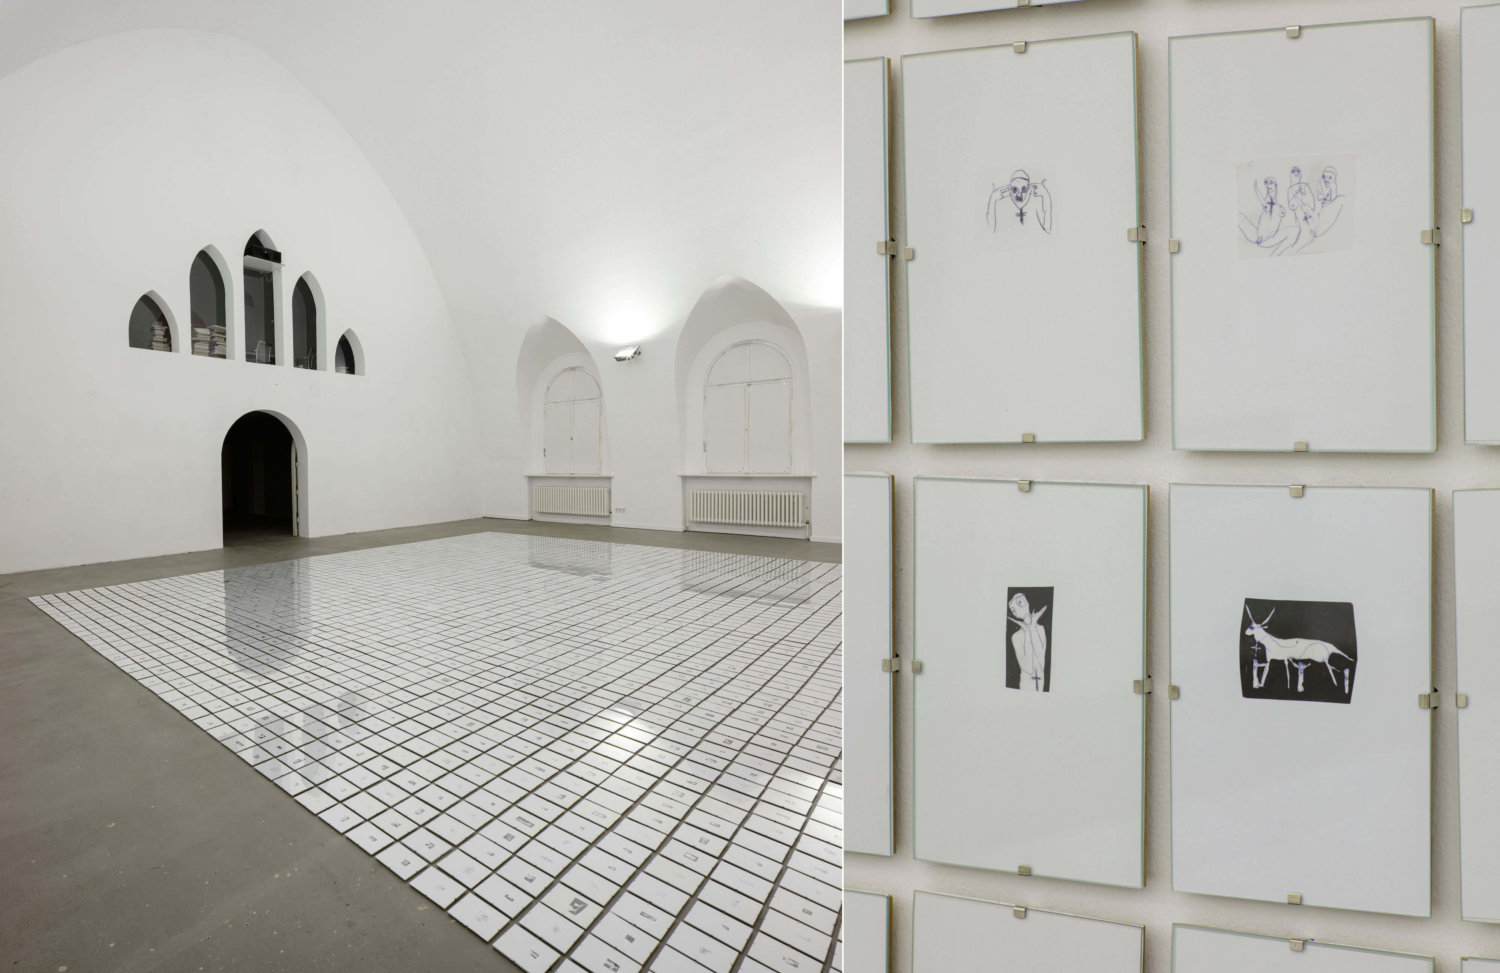 Links eine Raumansicht mit Tür und Fenster, Lea Draegers Zeichnungen auf dem Boden, rechts Draegers Zeichnungen an der Wand.